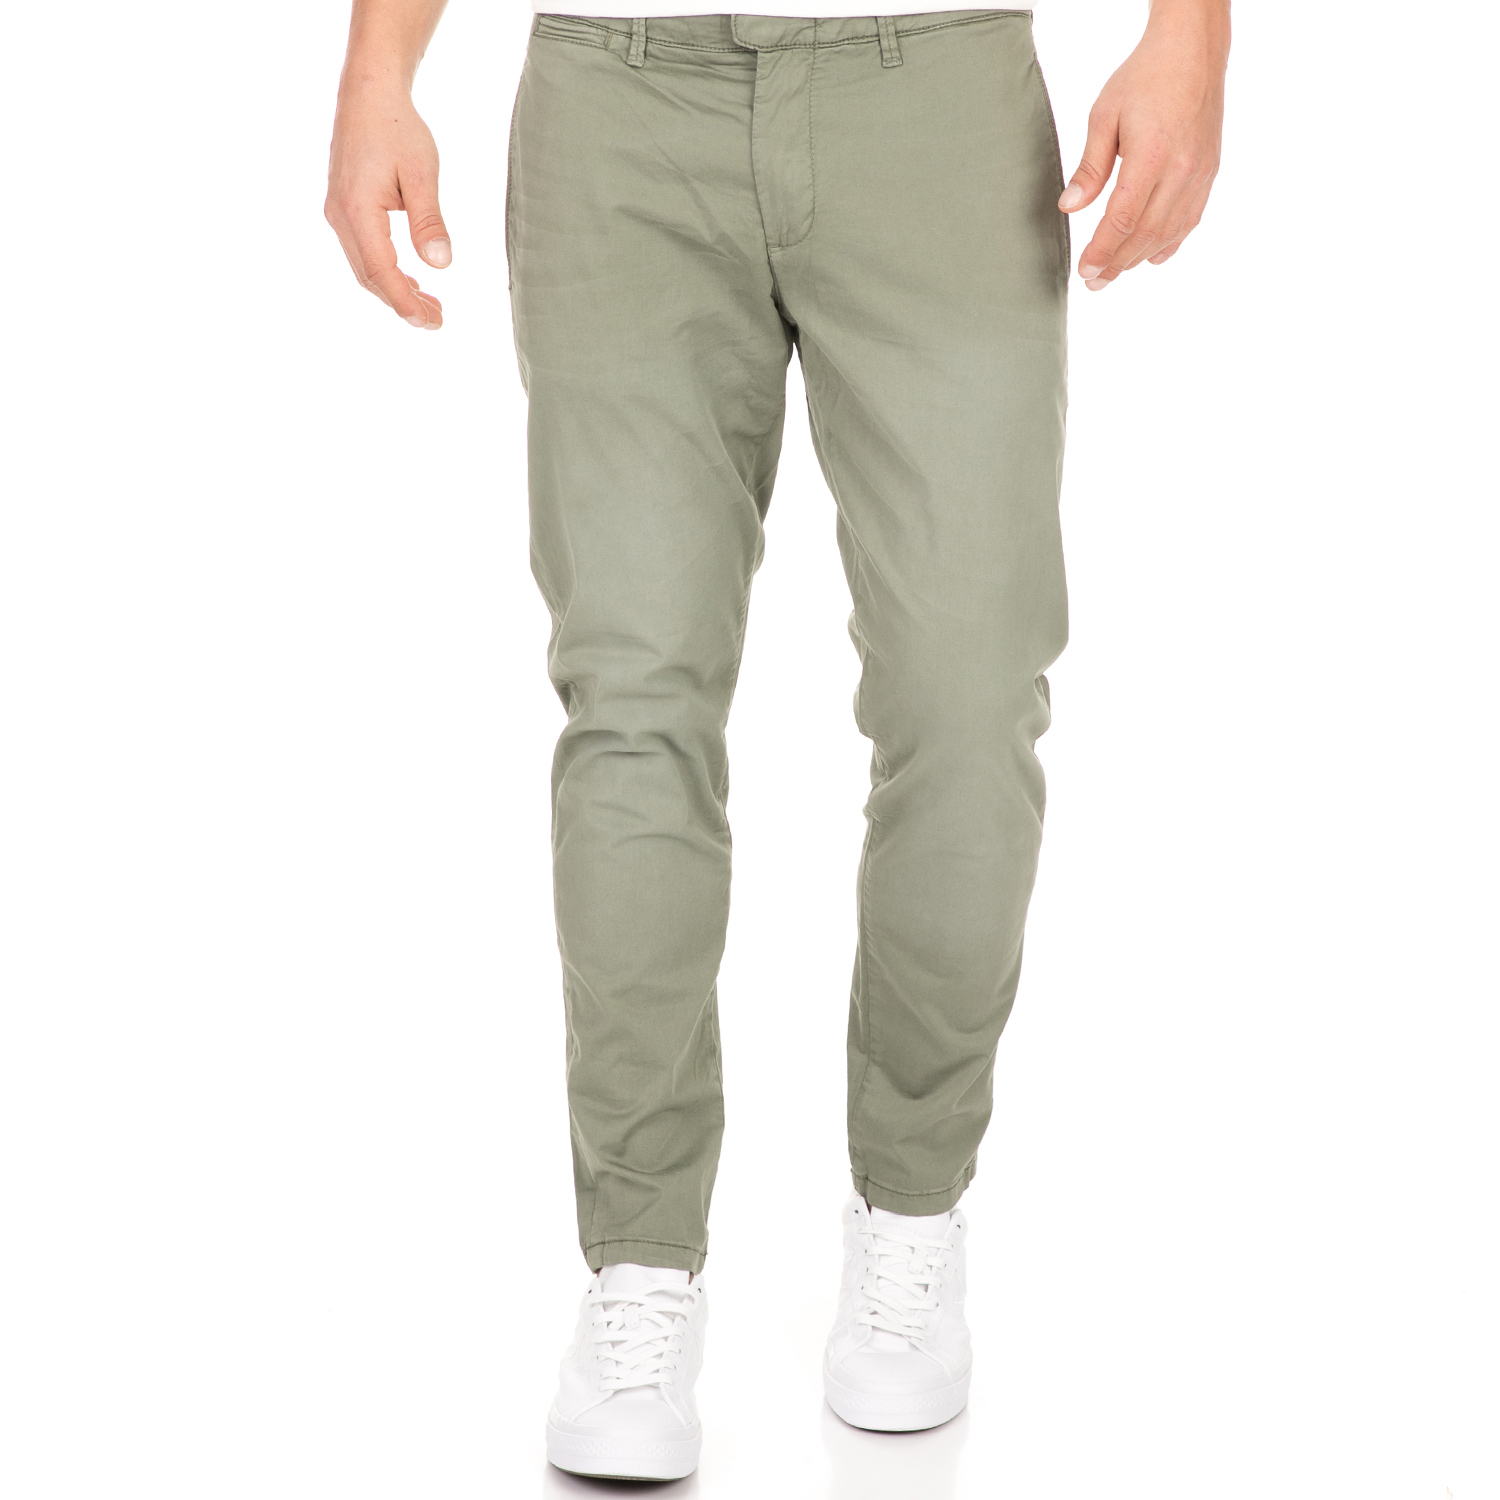 Ανδρικά/Ρούχα/Παντελόνια/Chinos SSEINSE - Ανδρικό παντελόνι SSEINSE FILO χακί